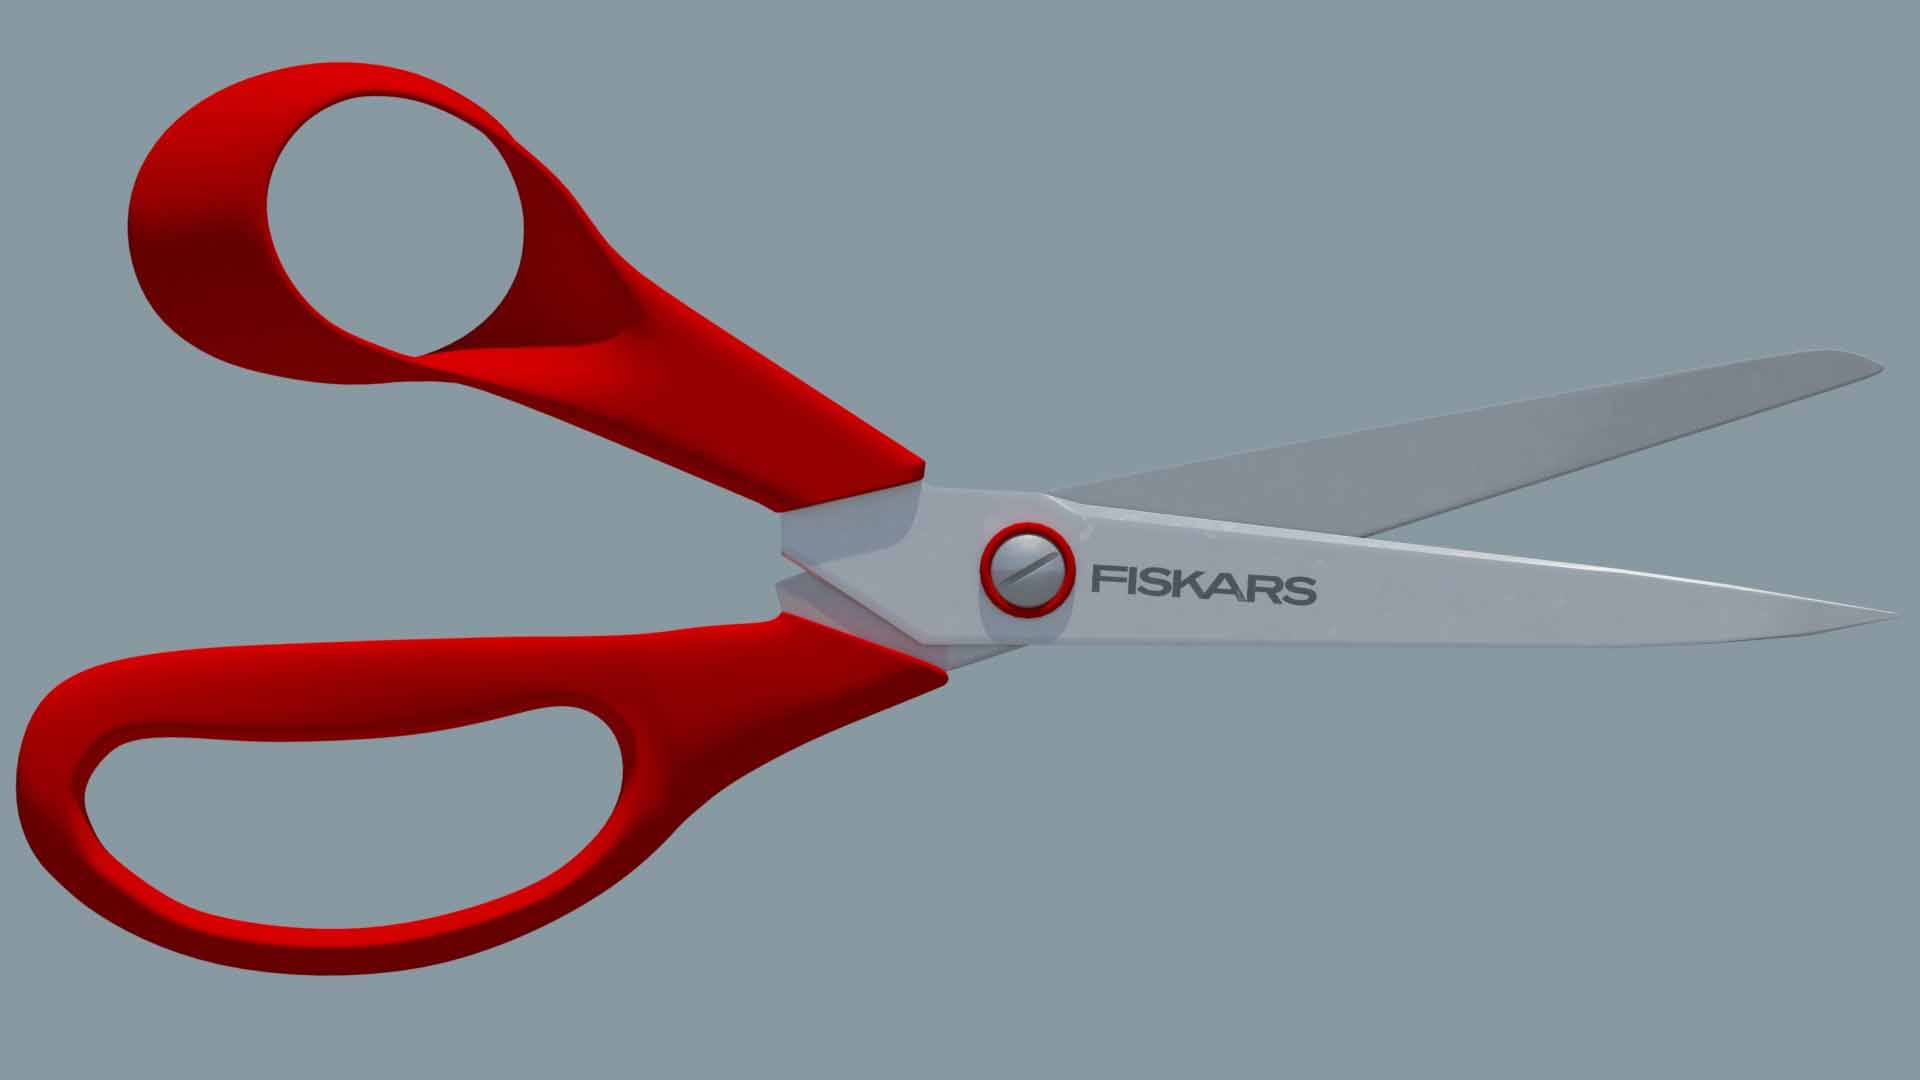 scissors-red-fiskars-fanart-pixelion8